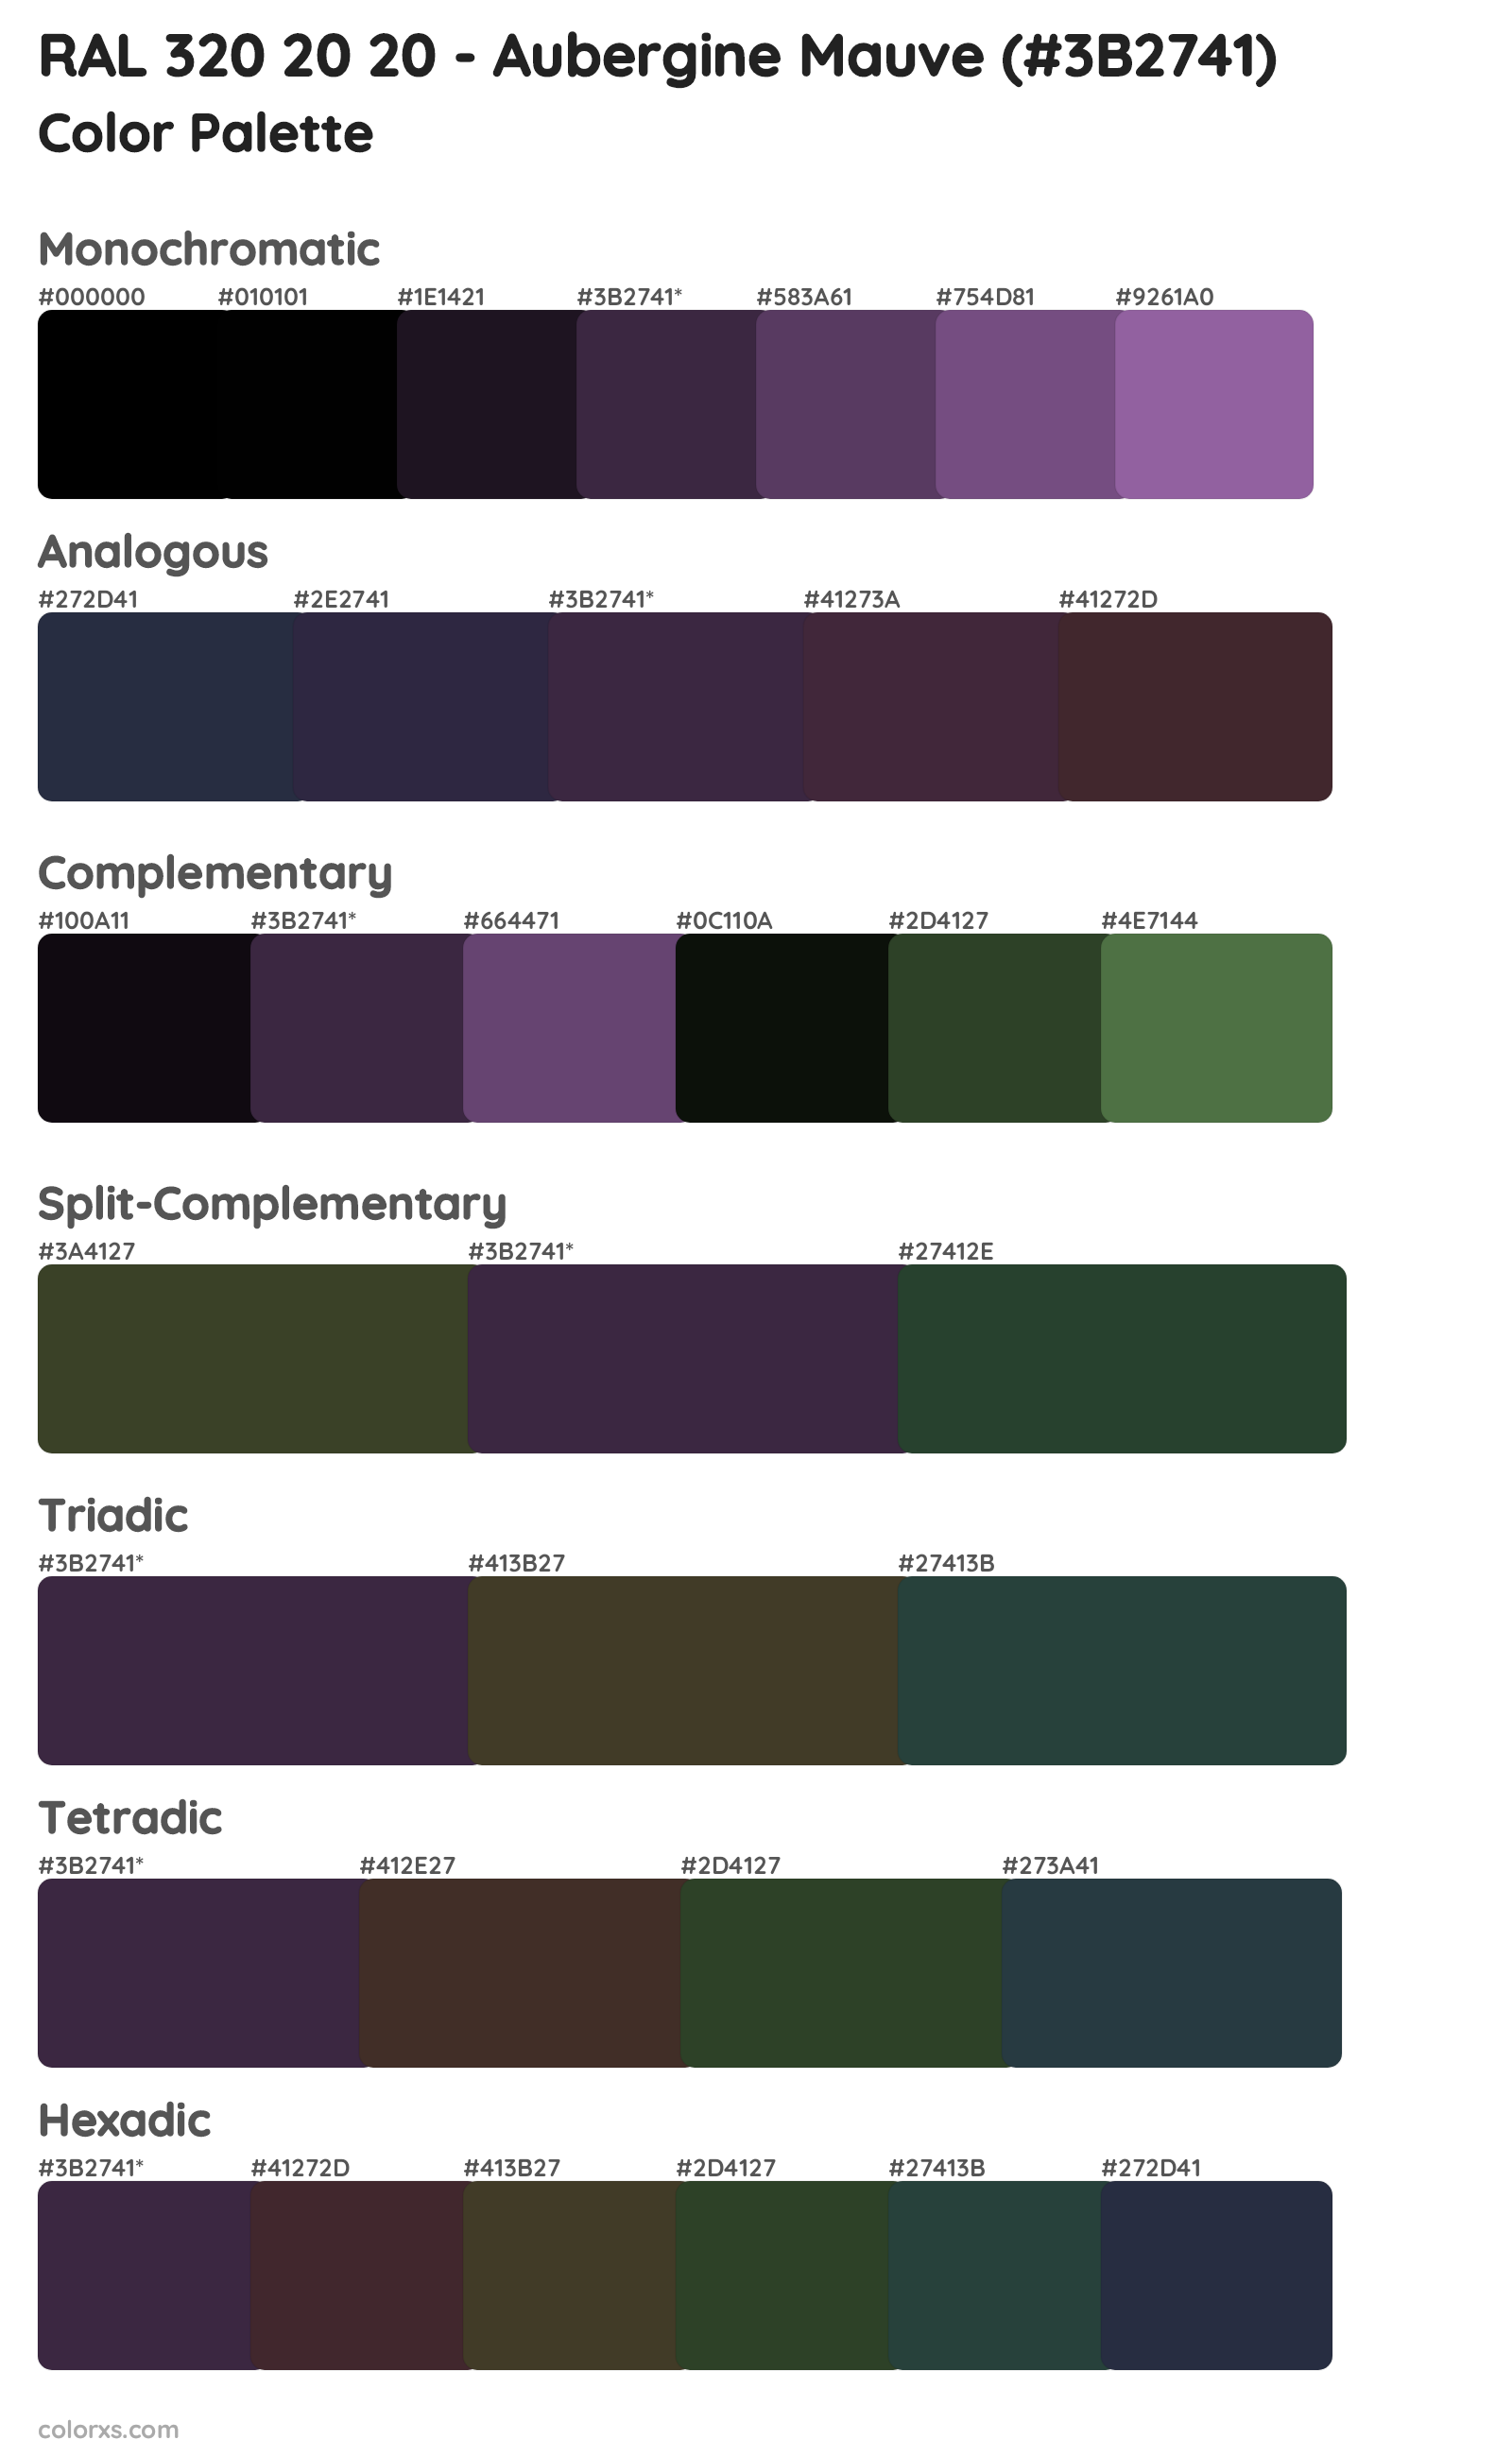 RAL 320 20 20 - Aubergine Mauve Color Scheme Palettes